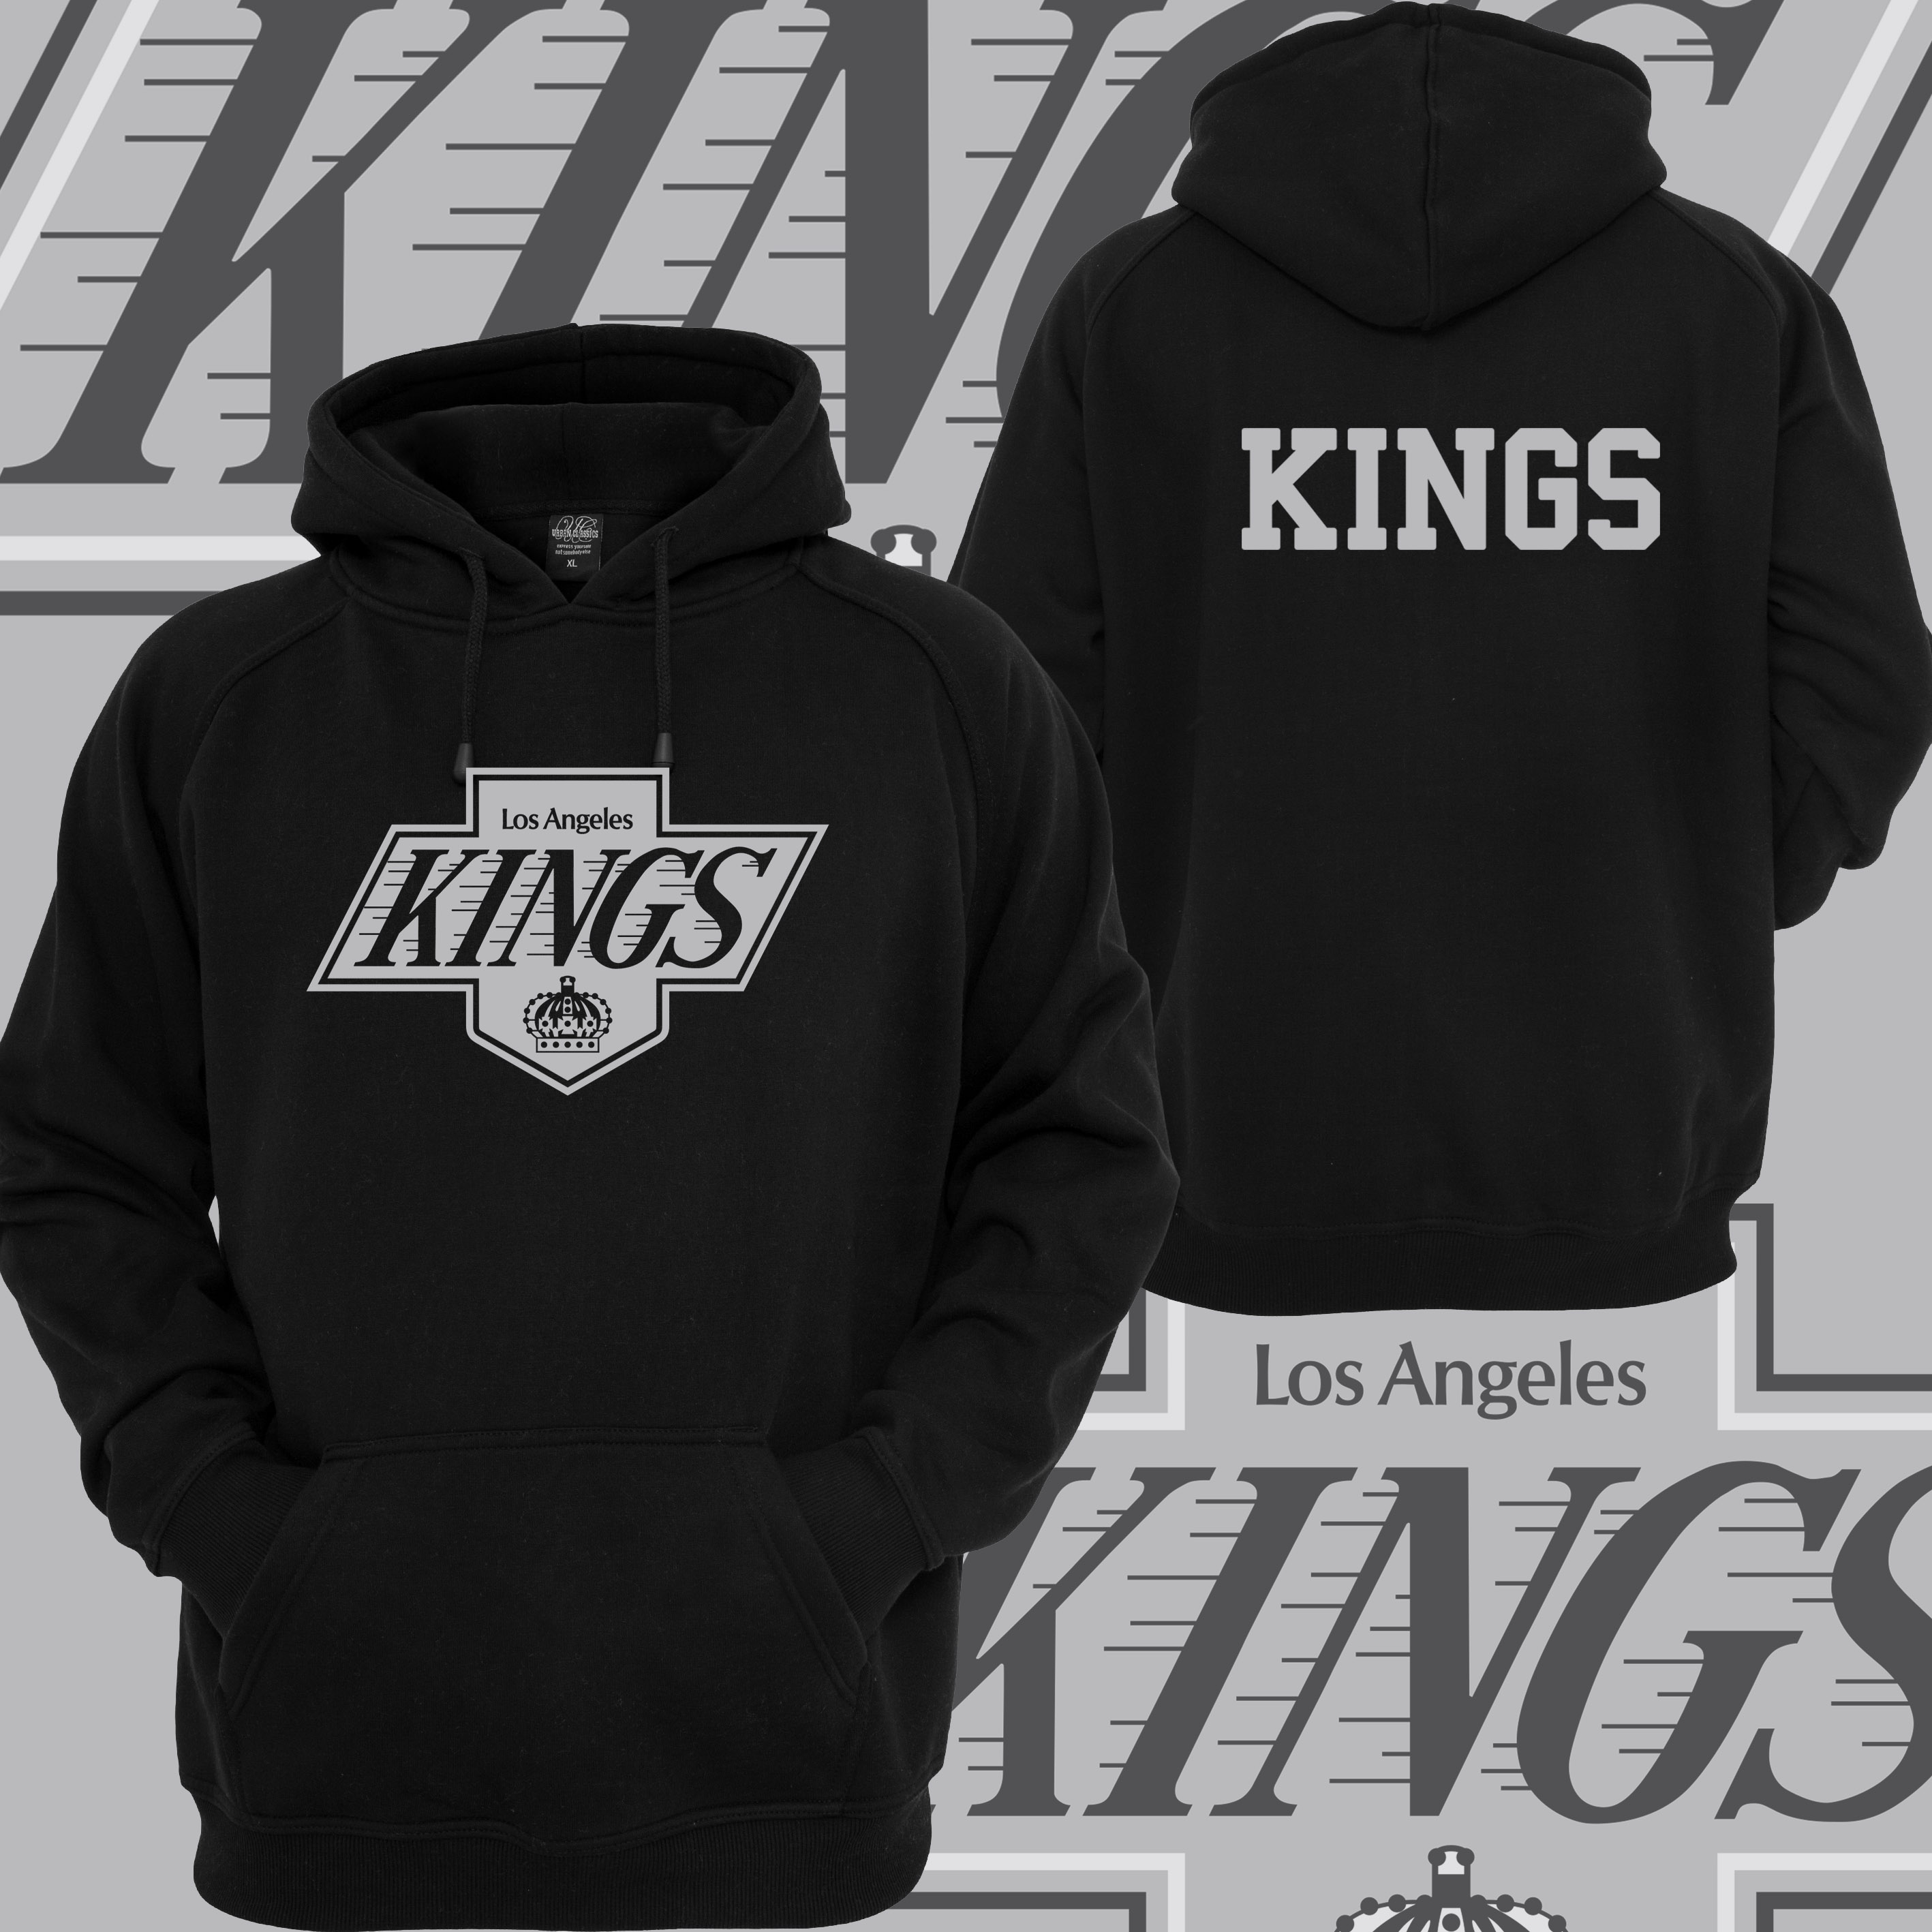 la kings hoodie sweatshirt